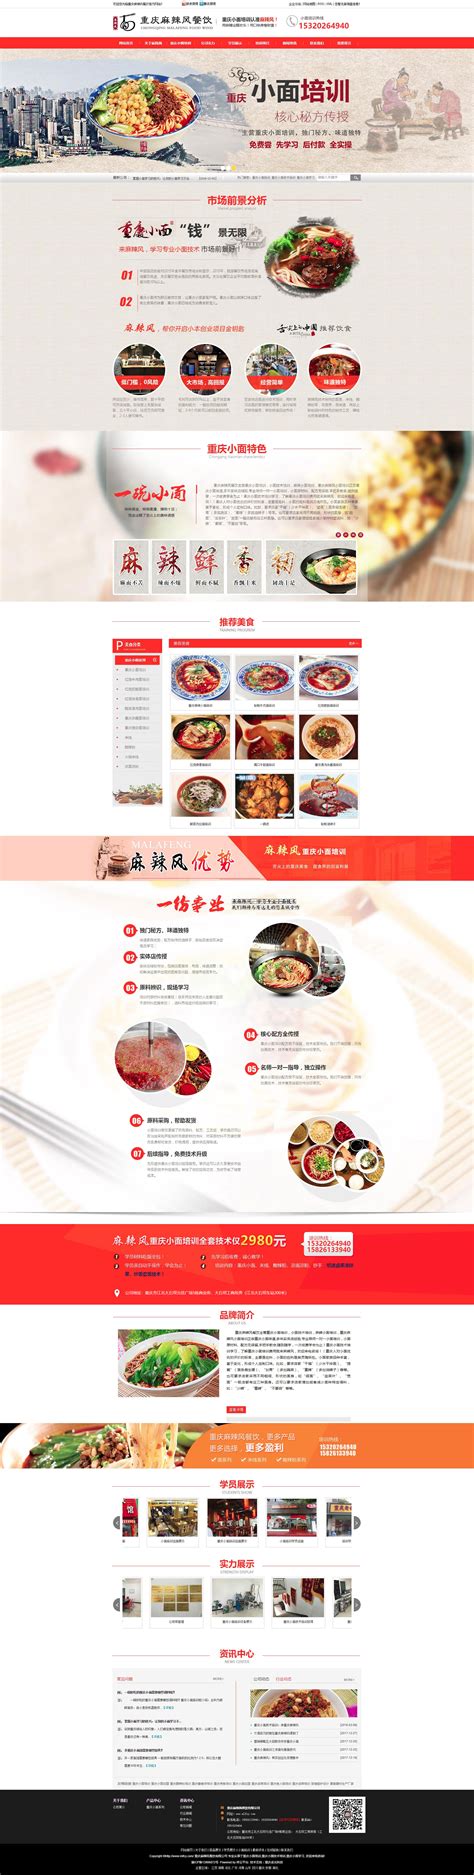 北京网站设计制作_网站制作设计_网页设计与制作-驰正科技